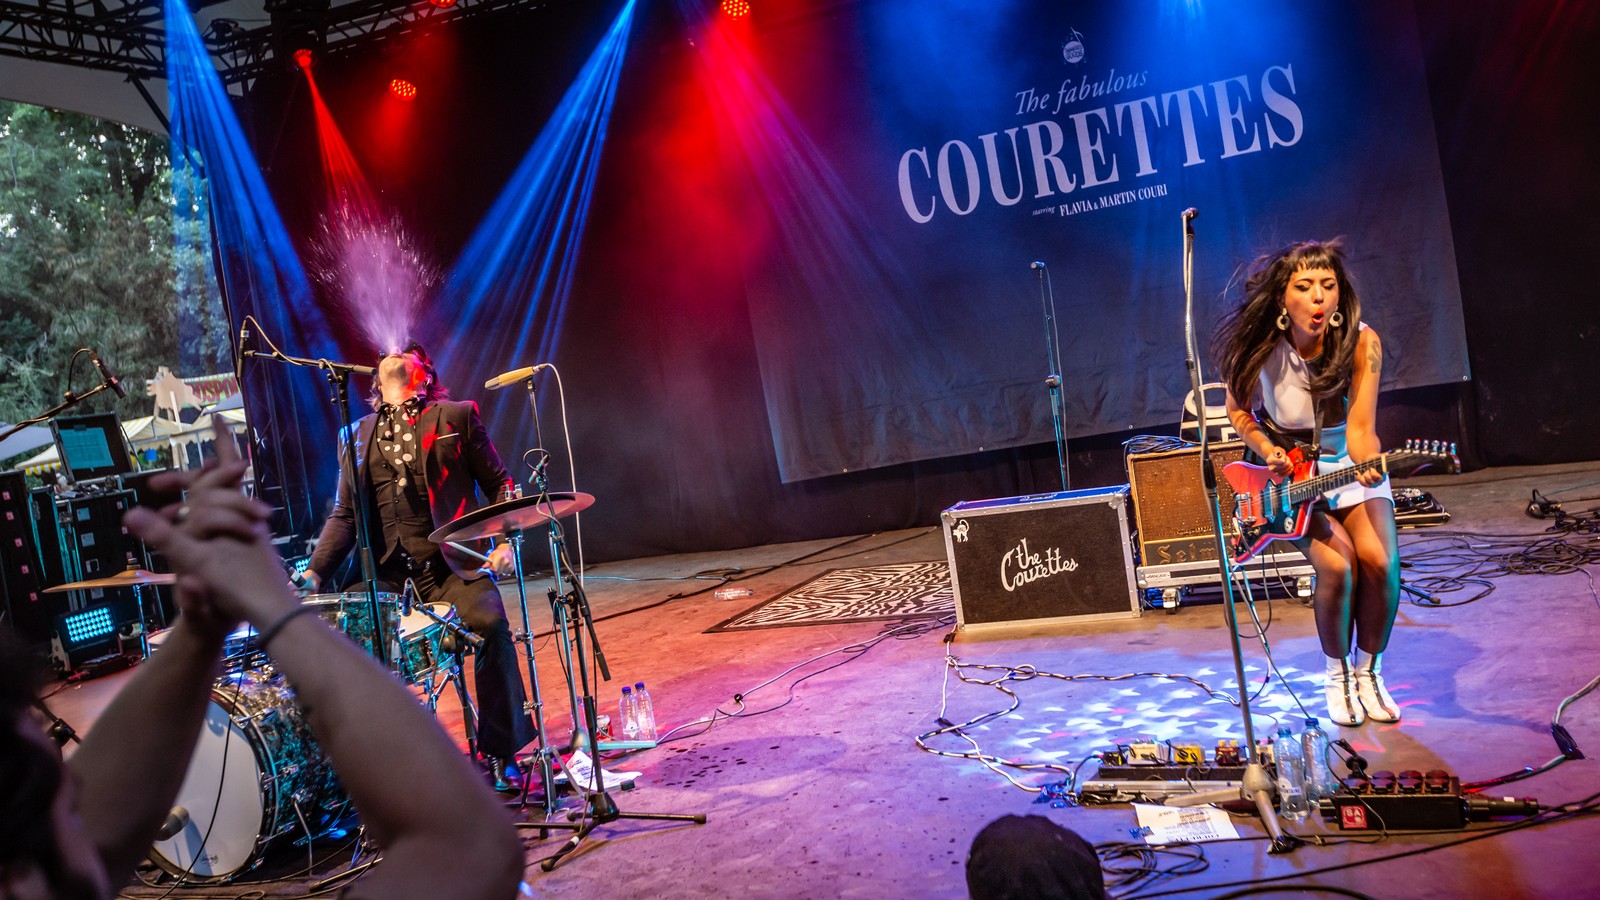 The Courettes